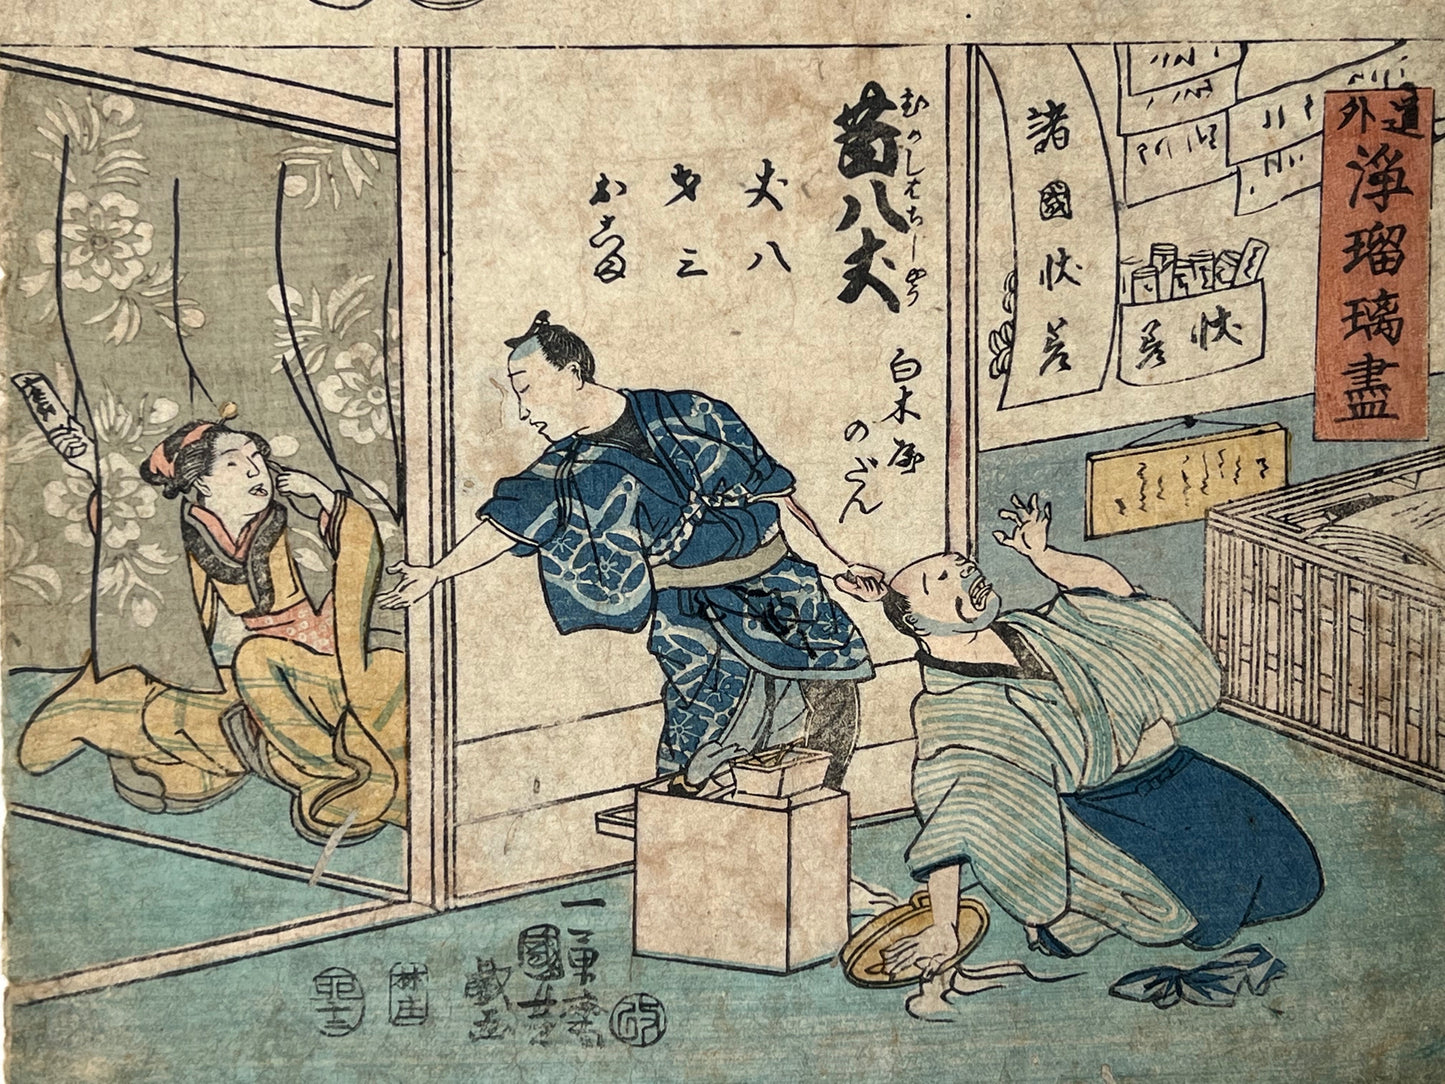 estampe japonaise humoristique , un homme courre après un serpent, une femme effrayée, un homme tire les cheveux d'un autre, des spectateurs rigolent, gros plan sur le scène tirer les cheveux